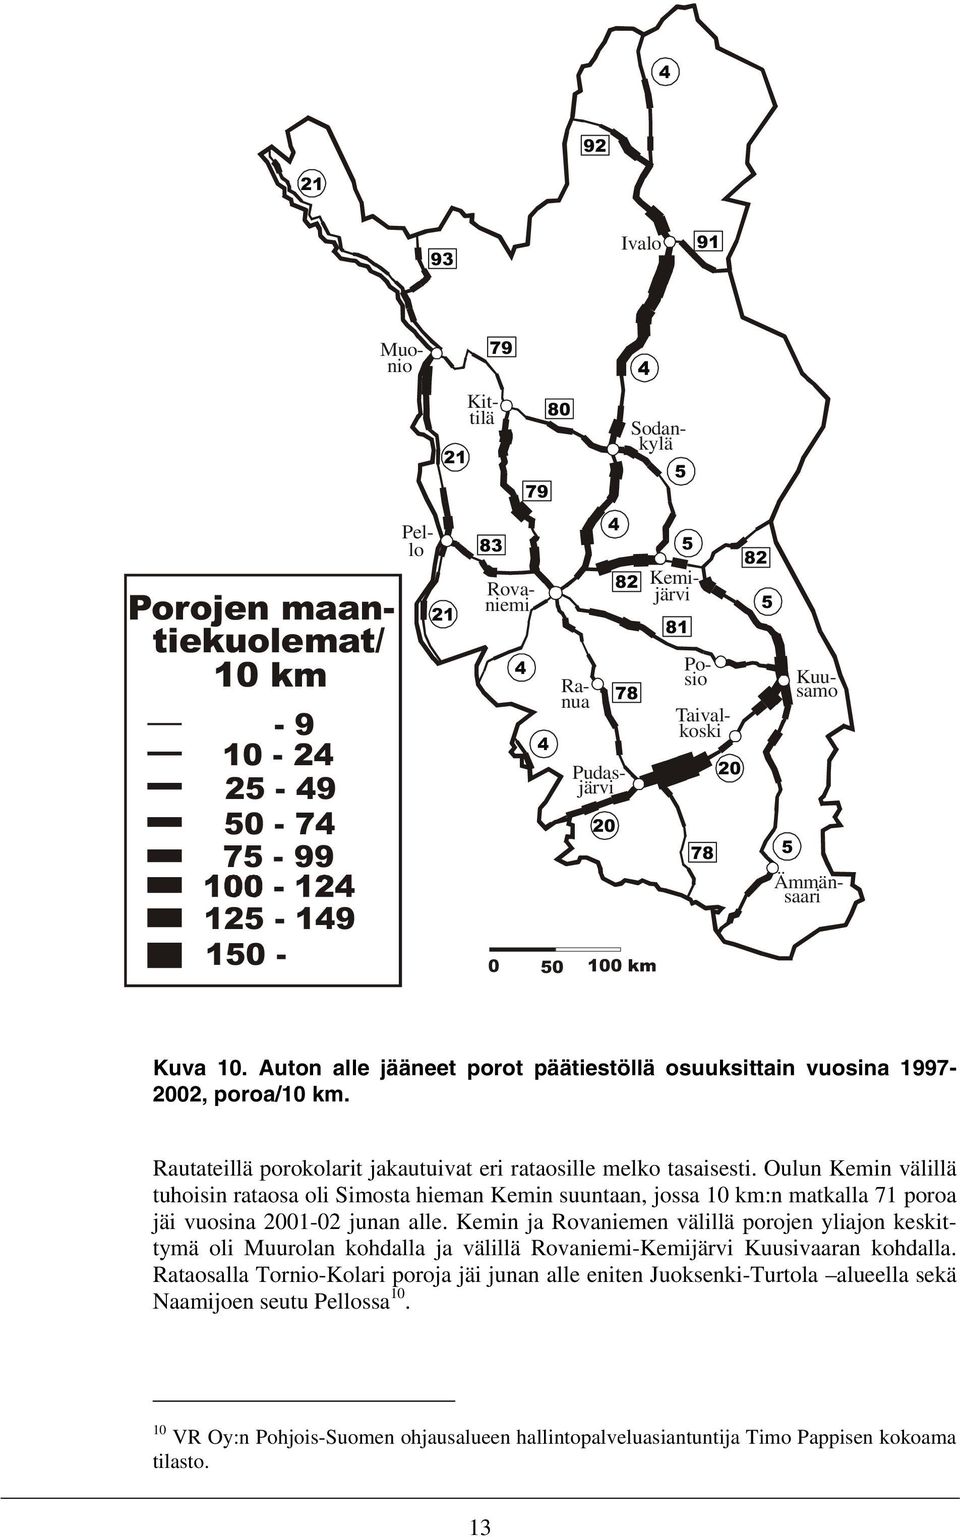 Oulun Kemin välillä tuhoisin rataosa oli Simosta hieman Kemin suuntaan, jossa 10 km:n matkalla 71 poroa jäi vuosina 2001-02 junan alle.